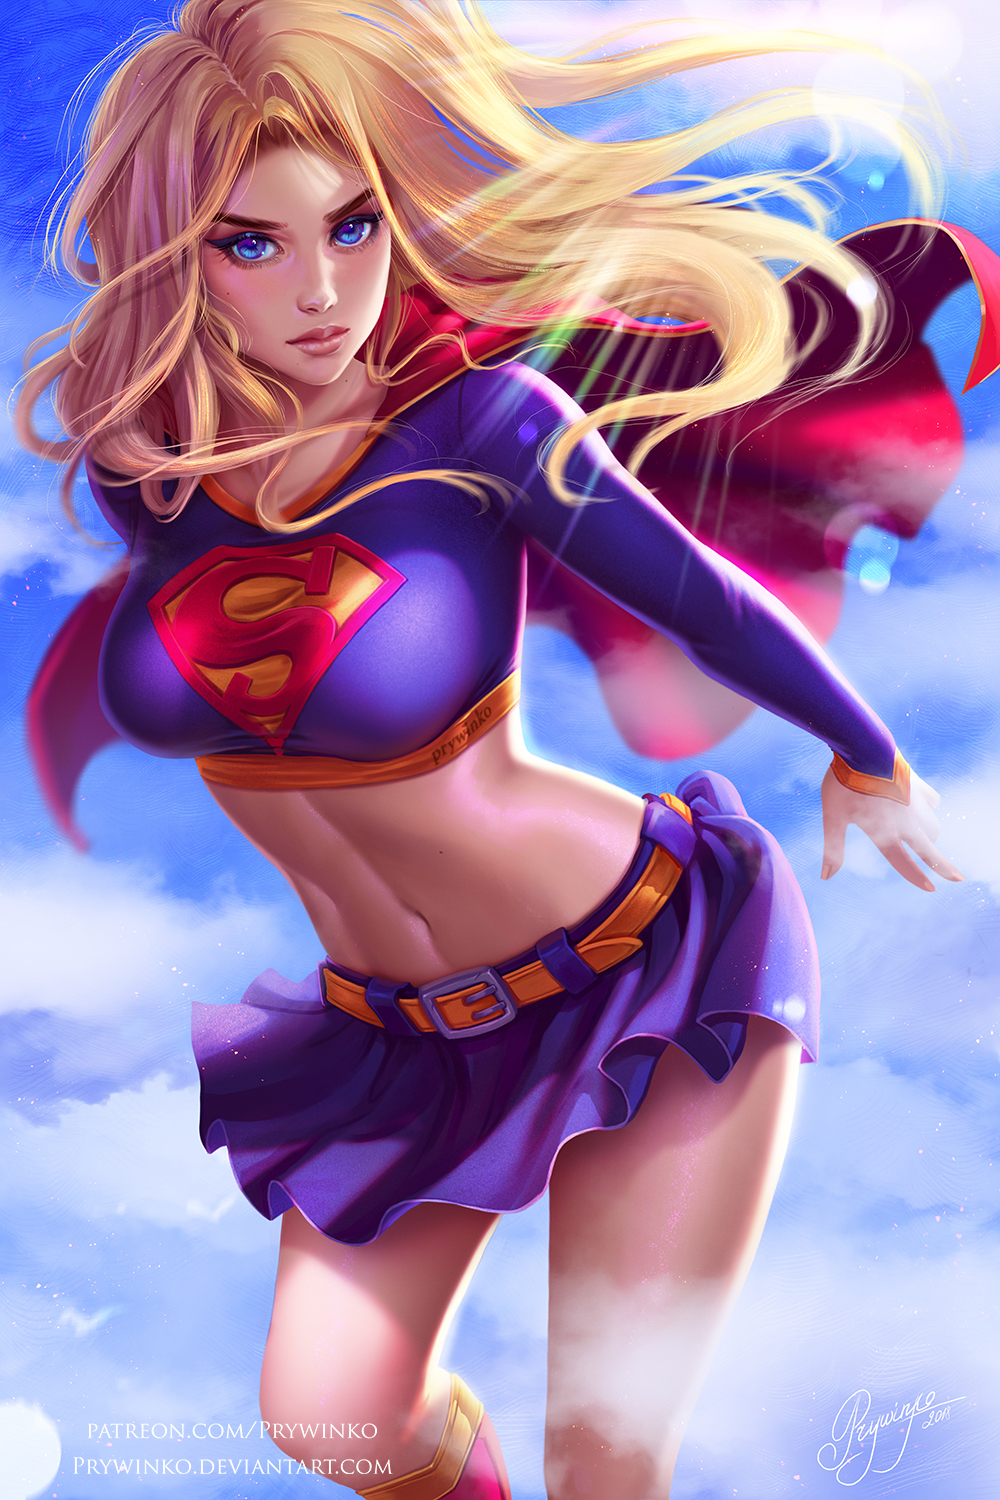 General 1000x1500 Prywinko drawing women Supergirl blonde long hair wind blue eyes blouses belly skirt belt flying knee-highs sky clouds digital art